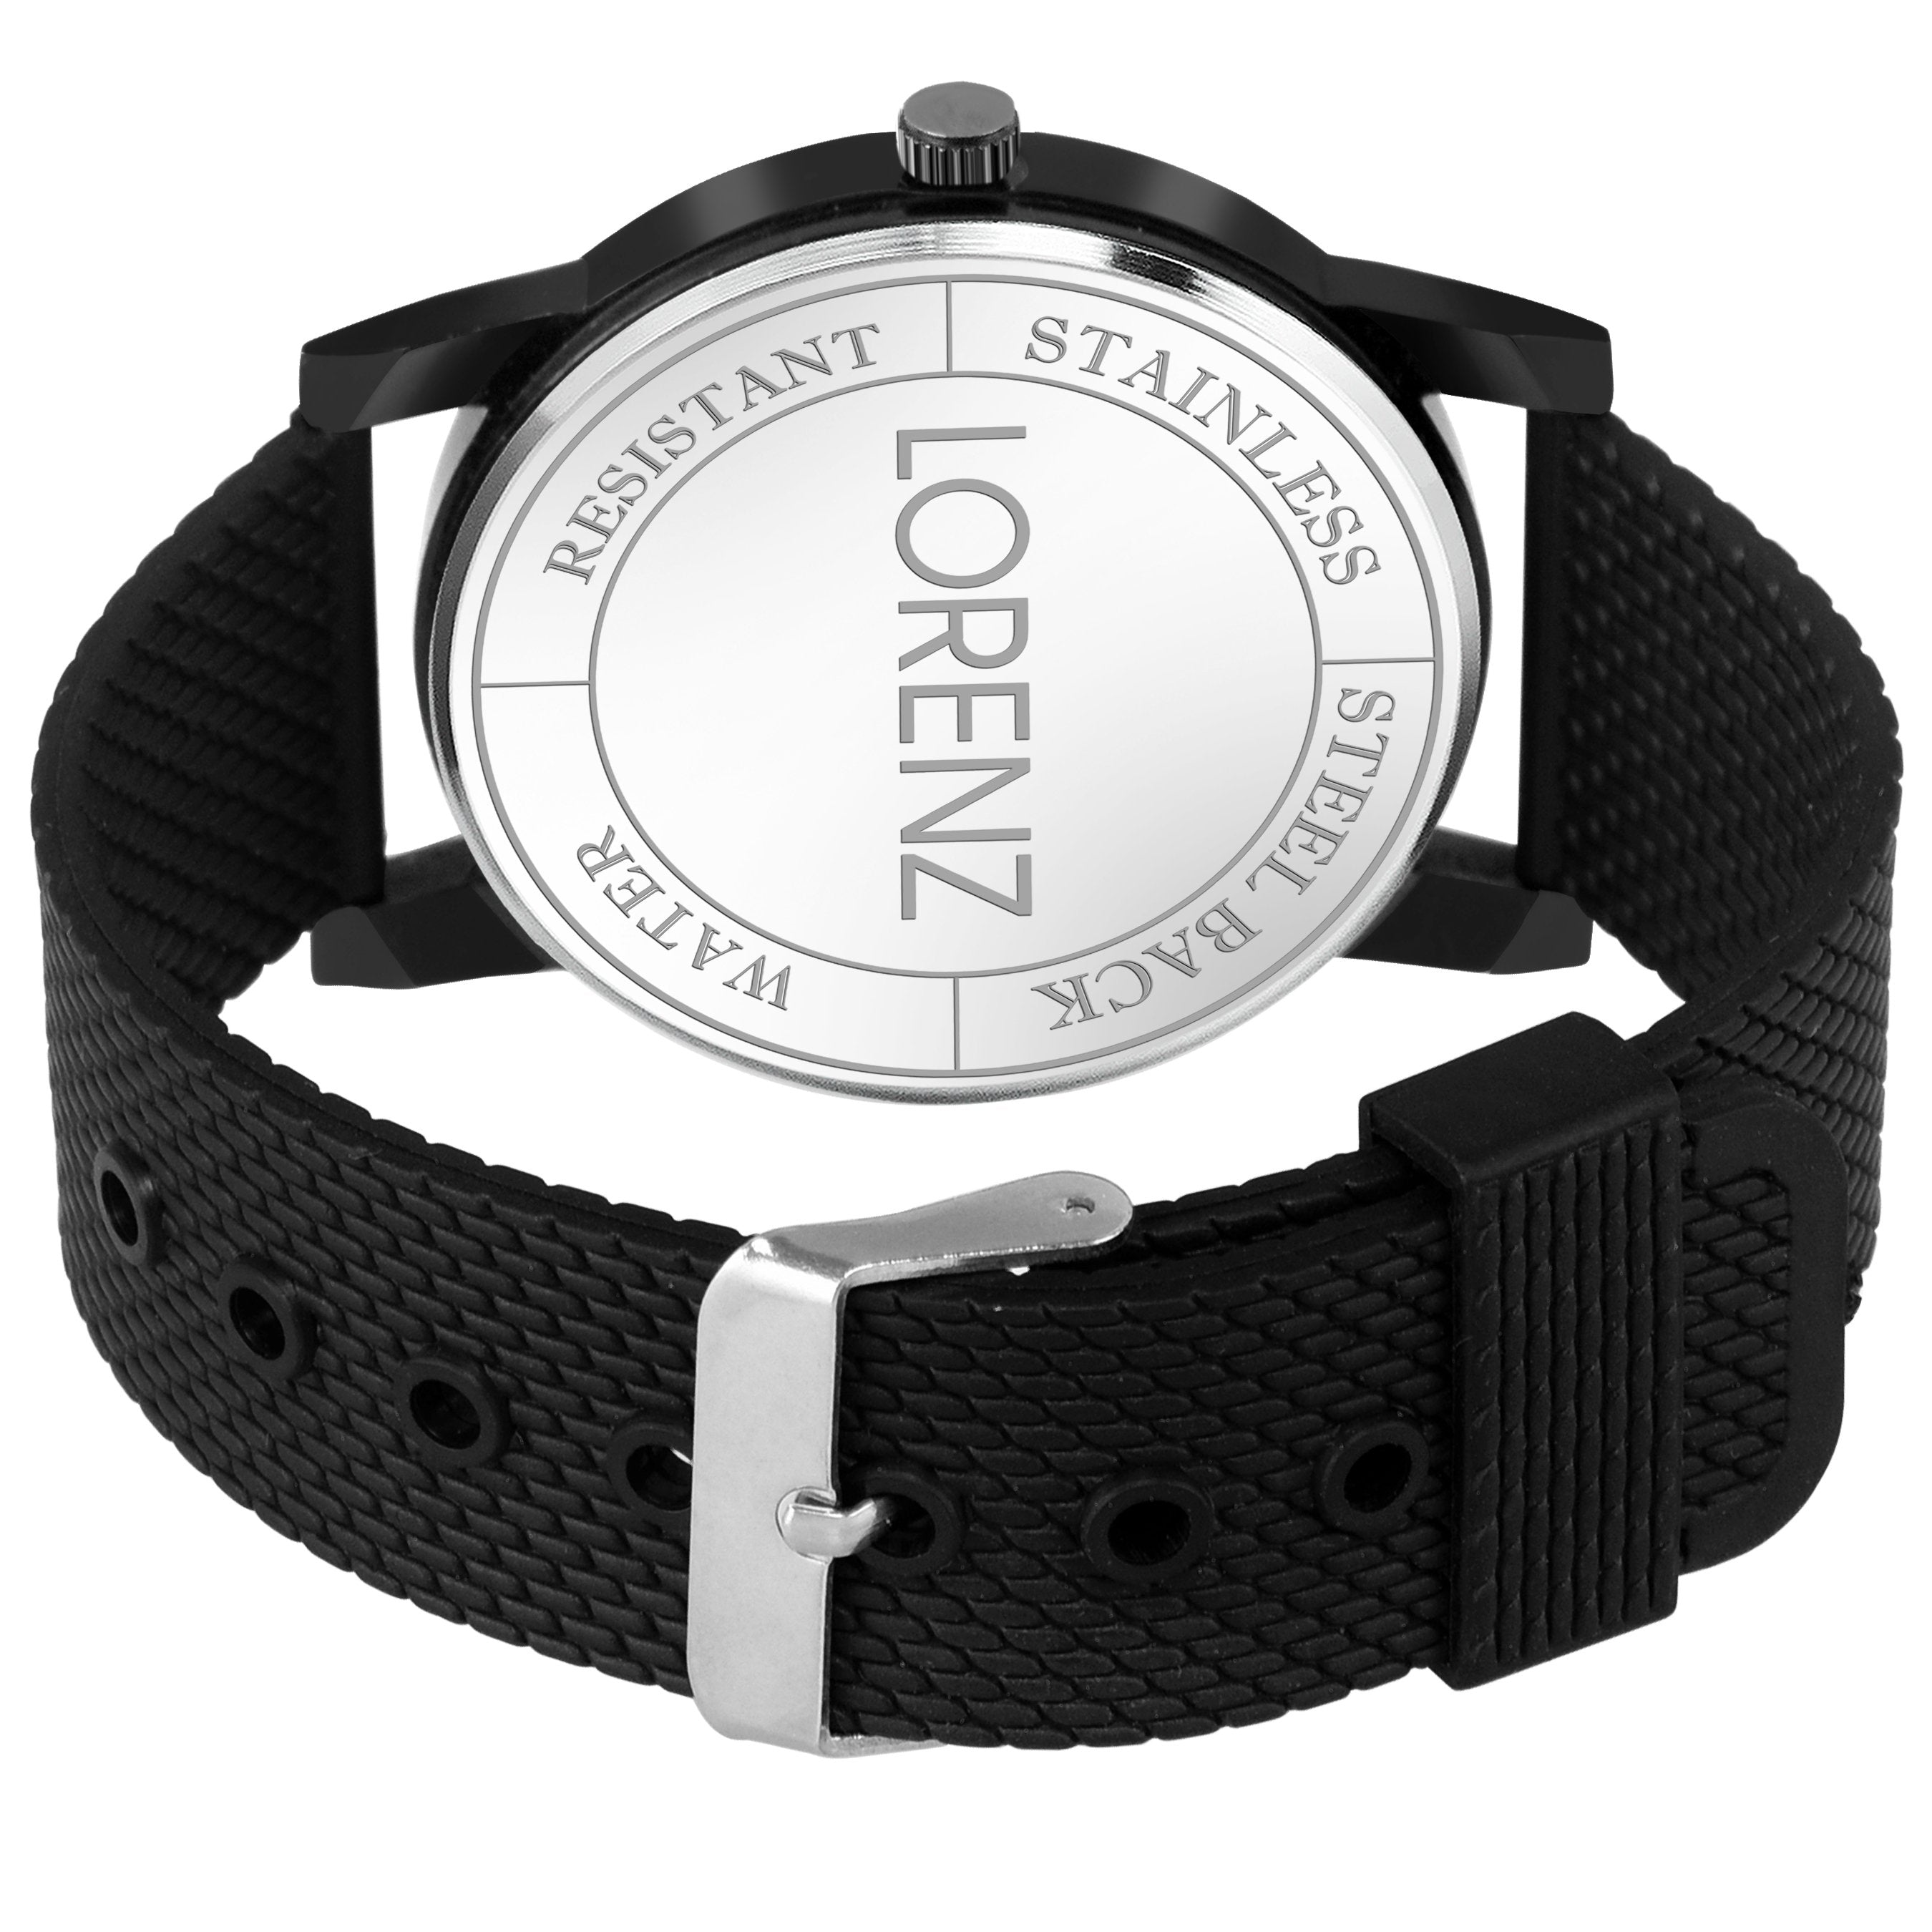 Lorenz Casual Multi-colour Dial Watch for Men & Boys- MK-2046W - Lorenz Fashion